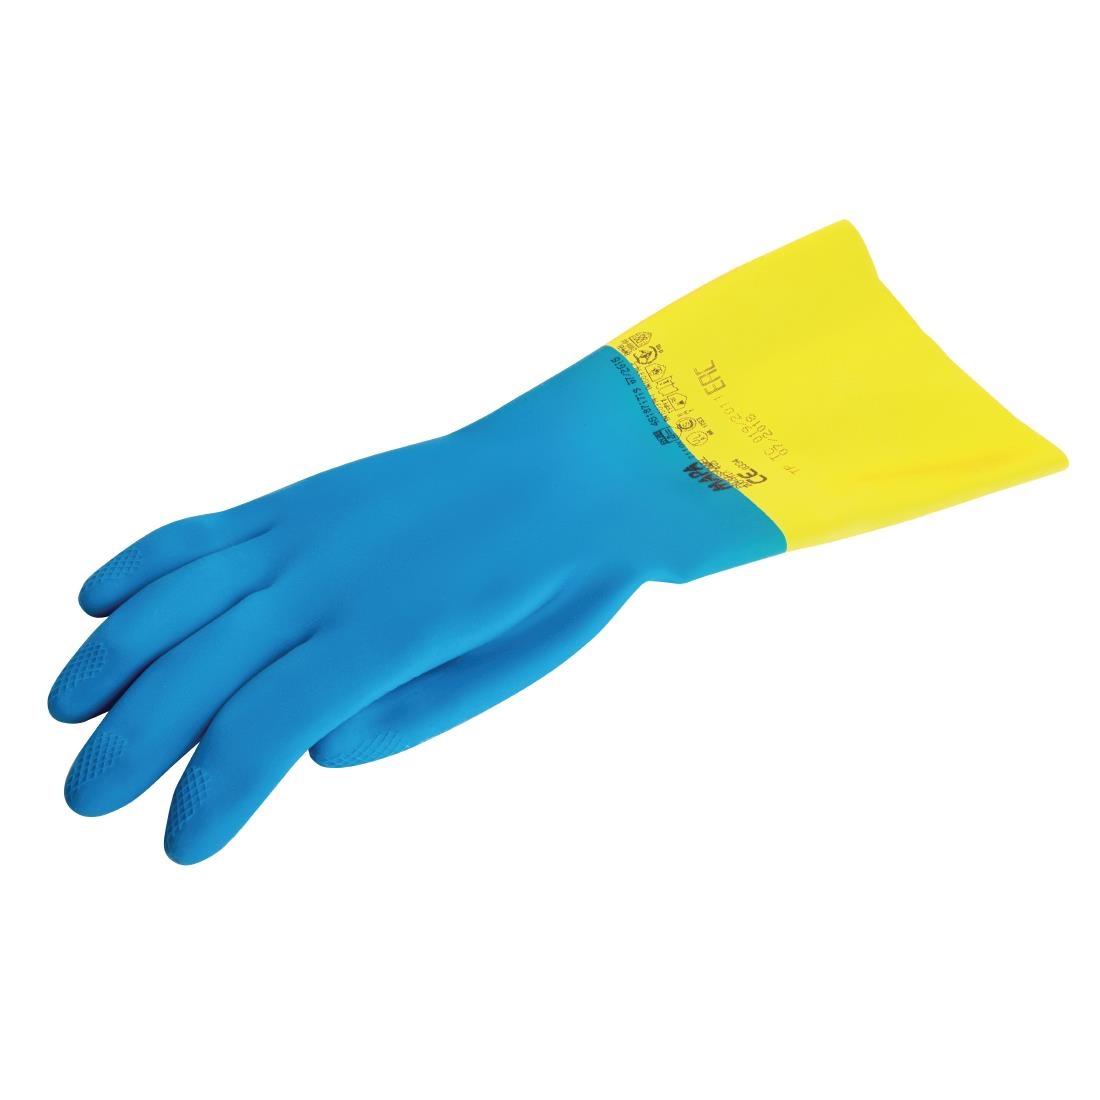 MAPA Alto 405 Liquid-Proof Heavy-Duty Janitorial Gloves Blue and Yellow Medium - FA296-M  - 5